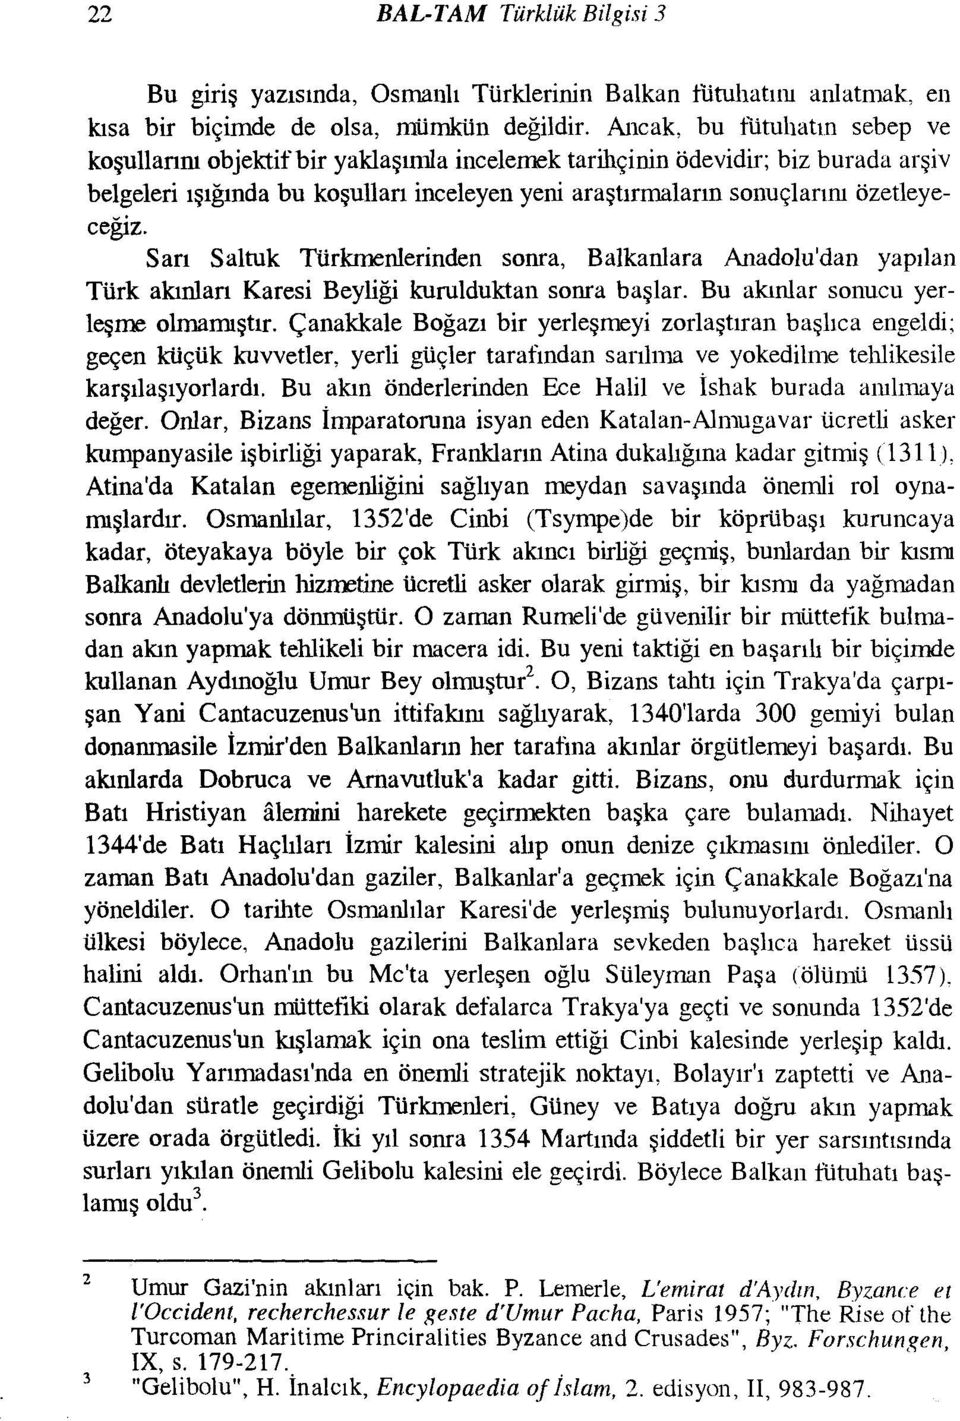 Sarı Saltuk Türkmenlerinden sonra, Balkanlara Anadolu'dan yapılan Türk akınları Karesi Beyliği kurulduktan sonra başlar. Bu akınlar sonucu yerleşme olmamıştır.